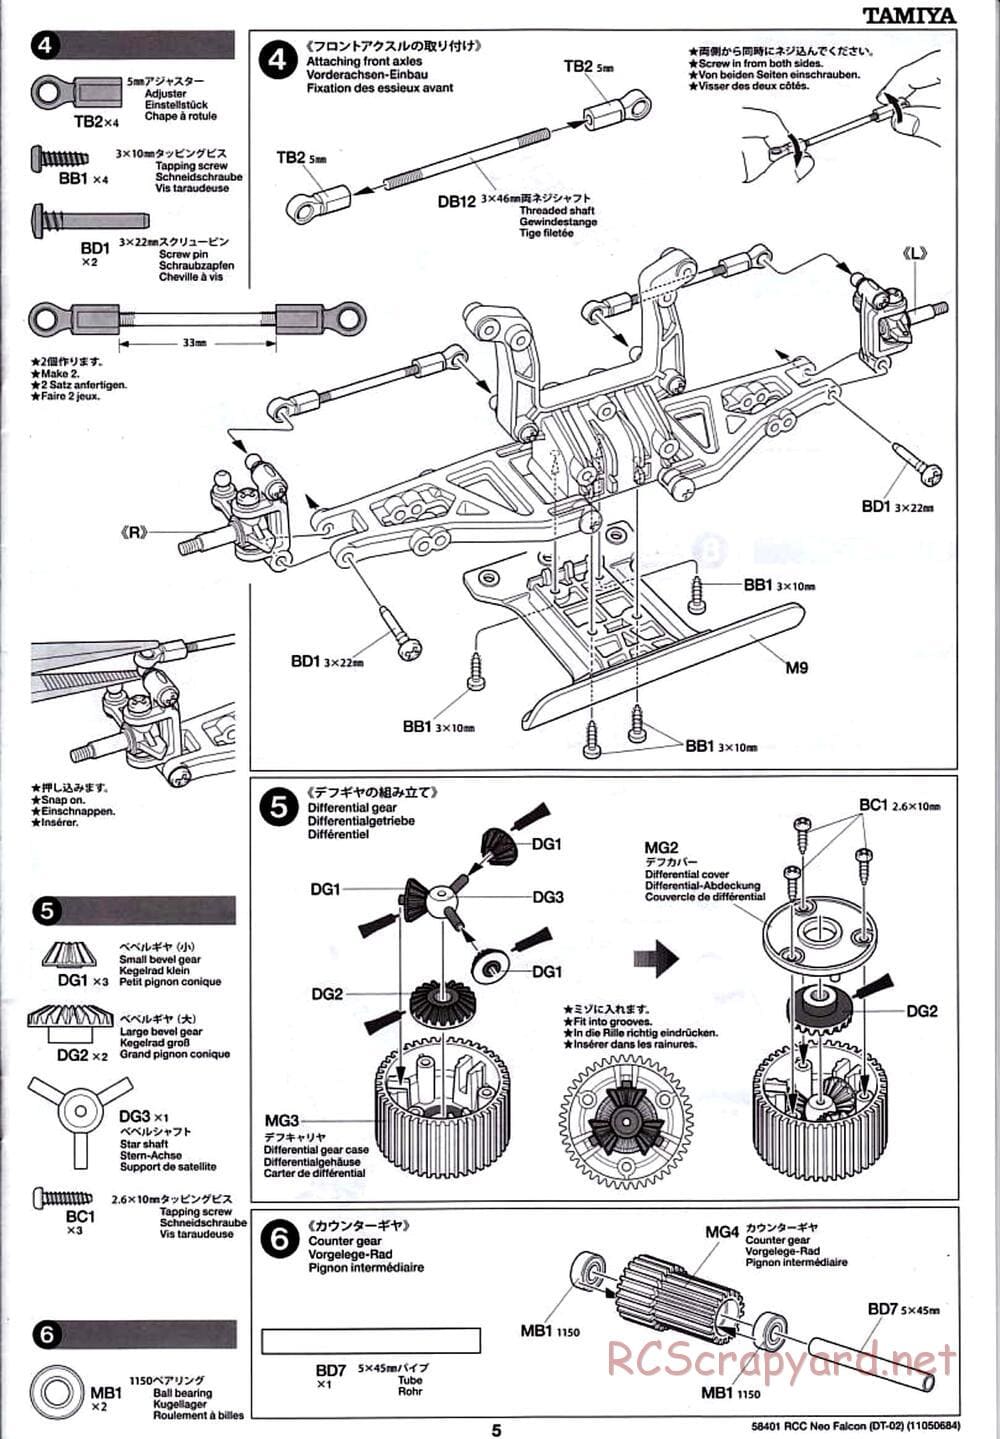 Tamiya - Neo Falcon Chassis - Manual - Page 5